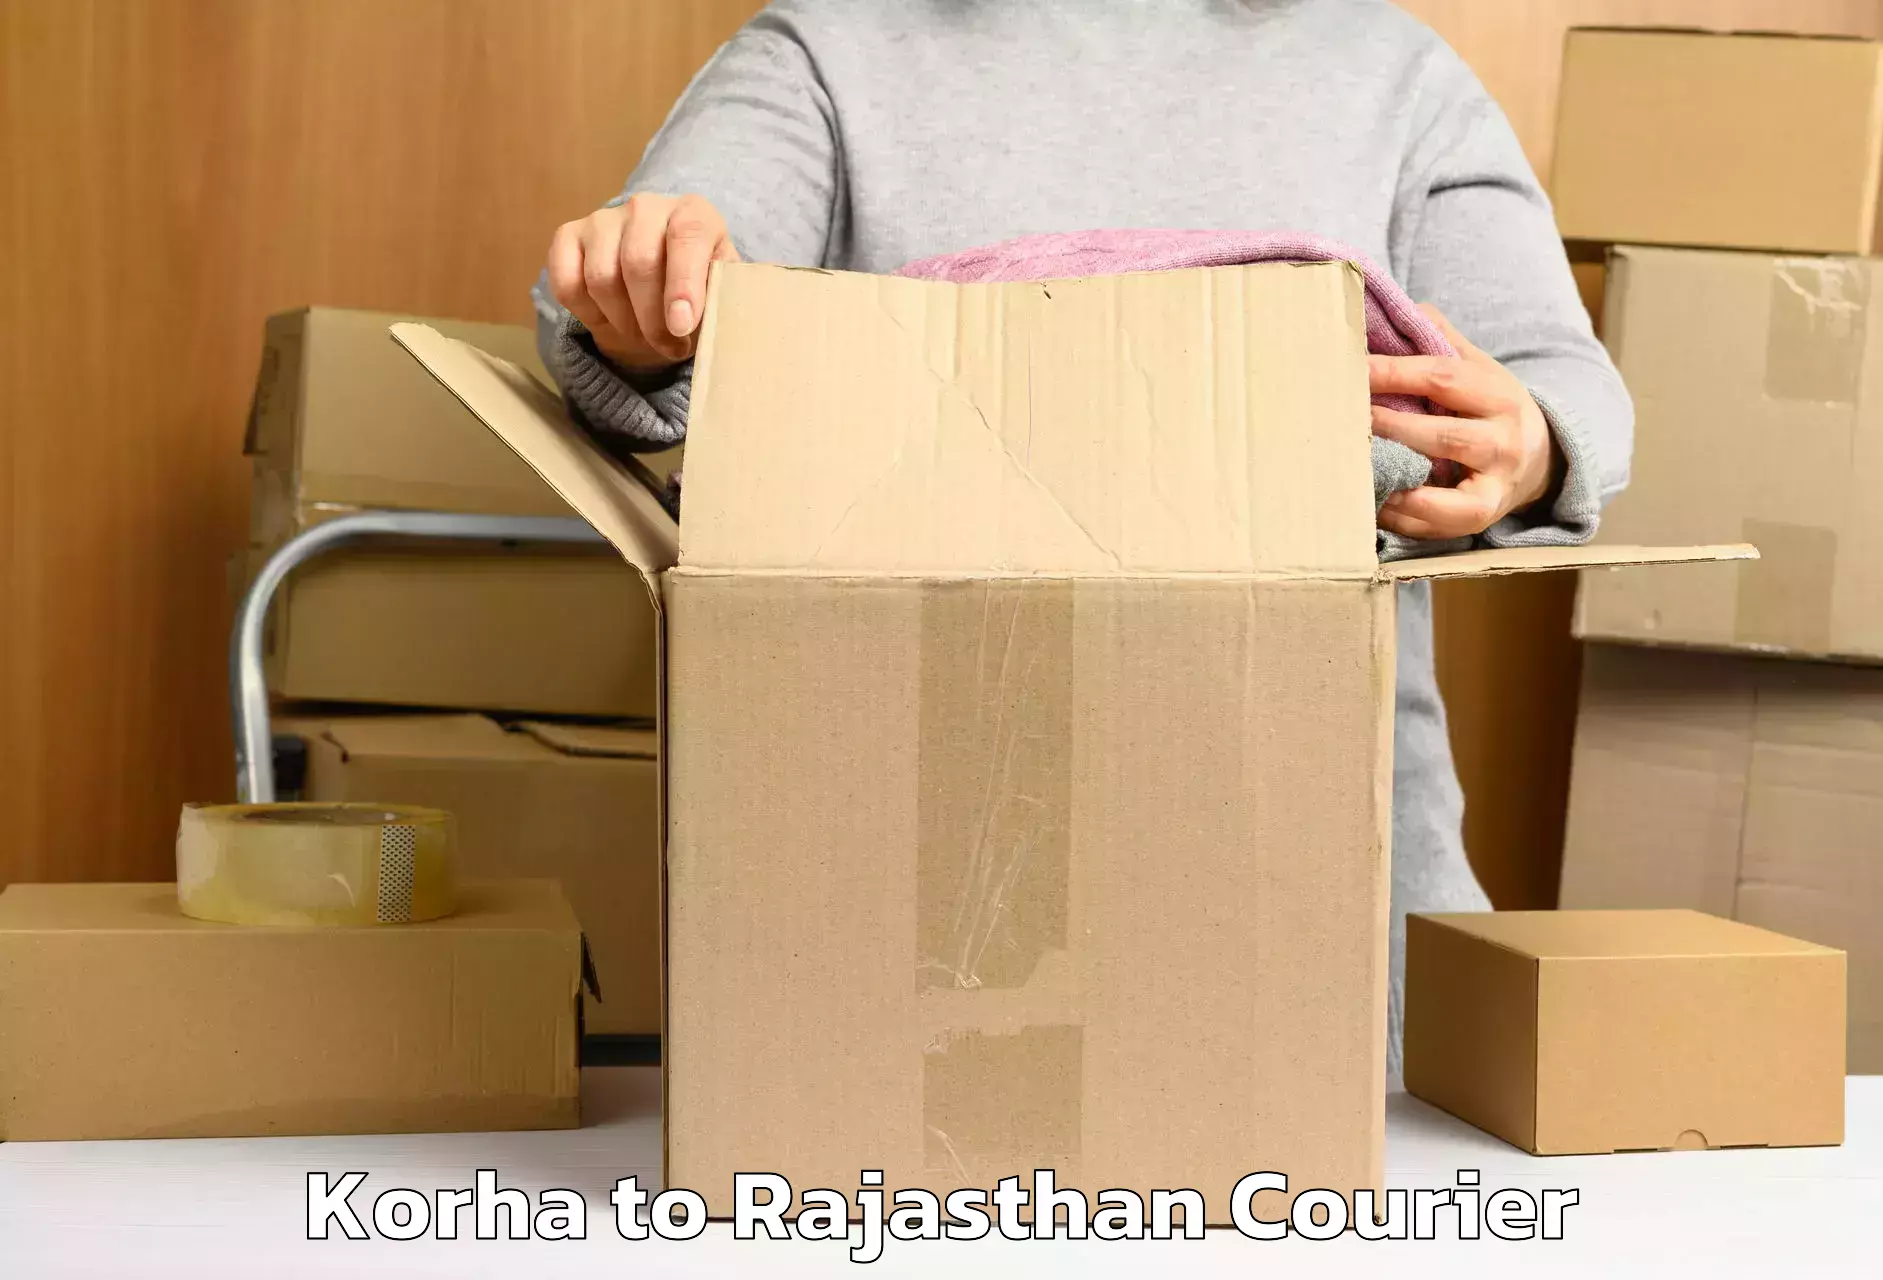 Luggage delivery network Korha to Kumbhalgarh